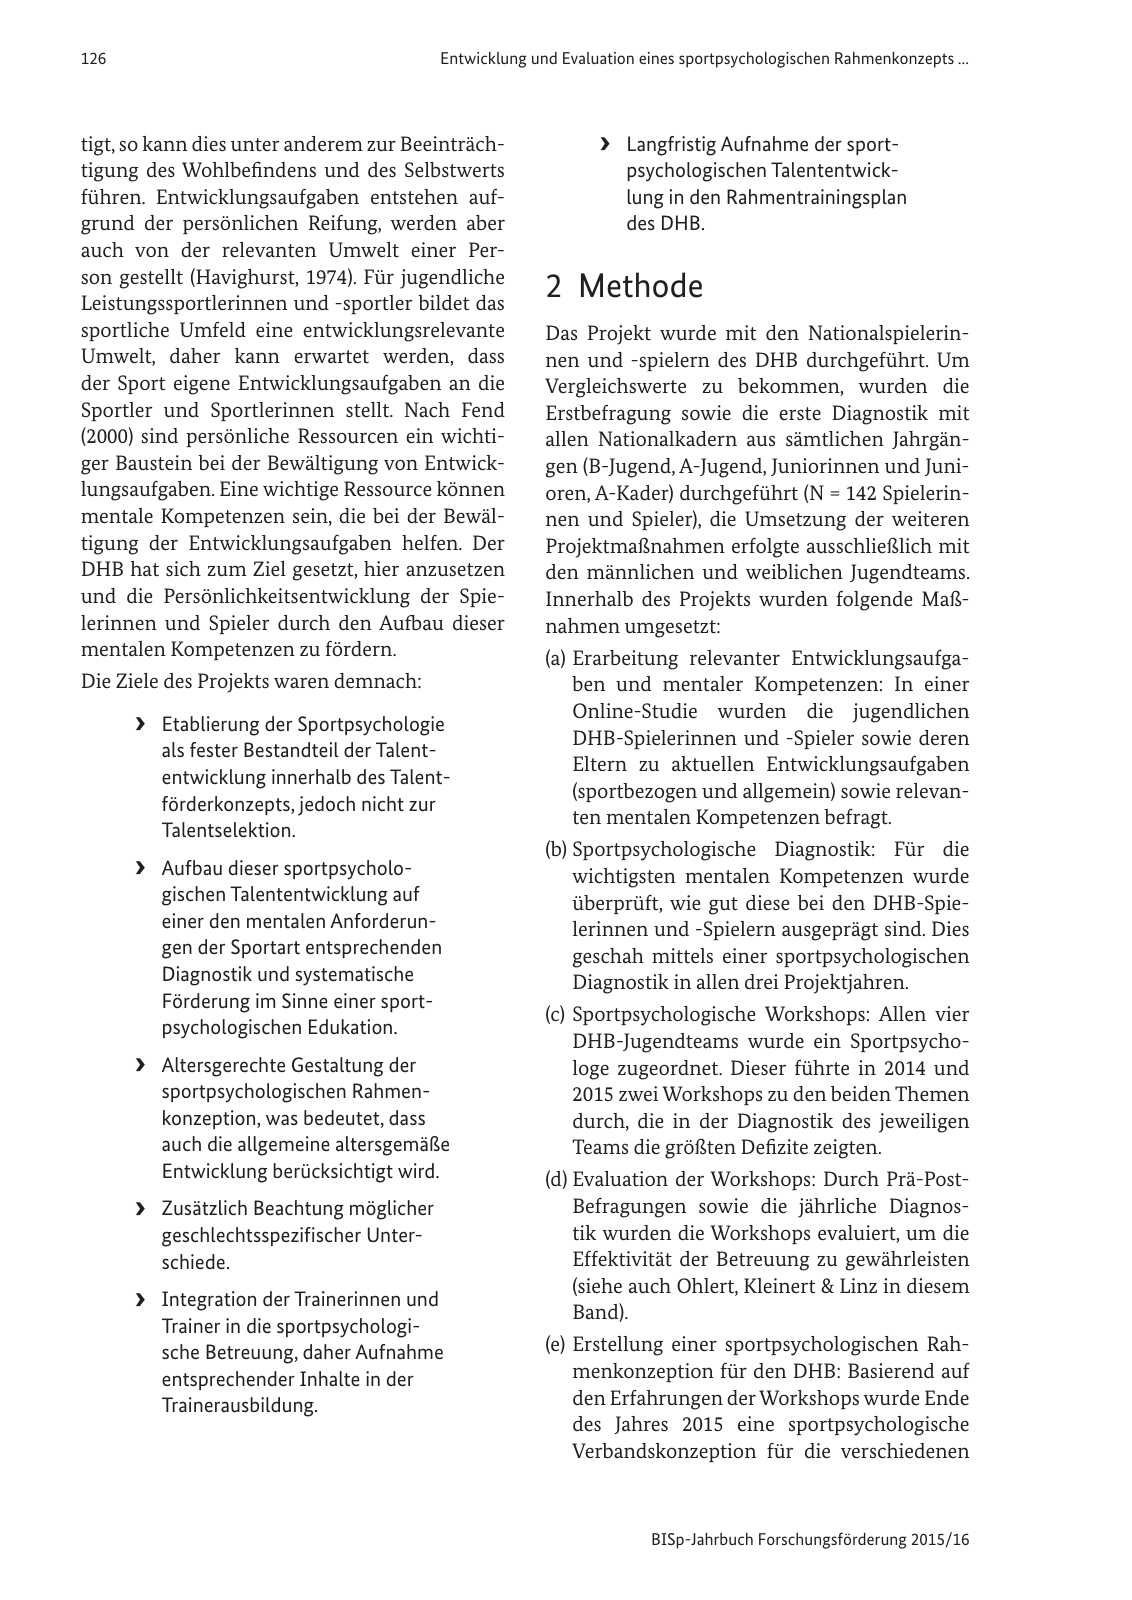 Vorschau BISp-Jahrbuch Forschungsförderung 2015/16 Seite 128